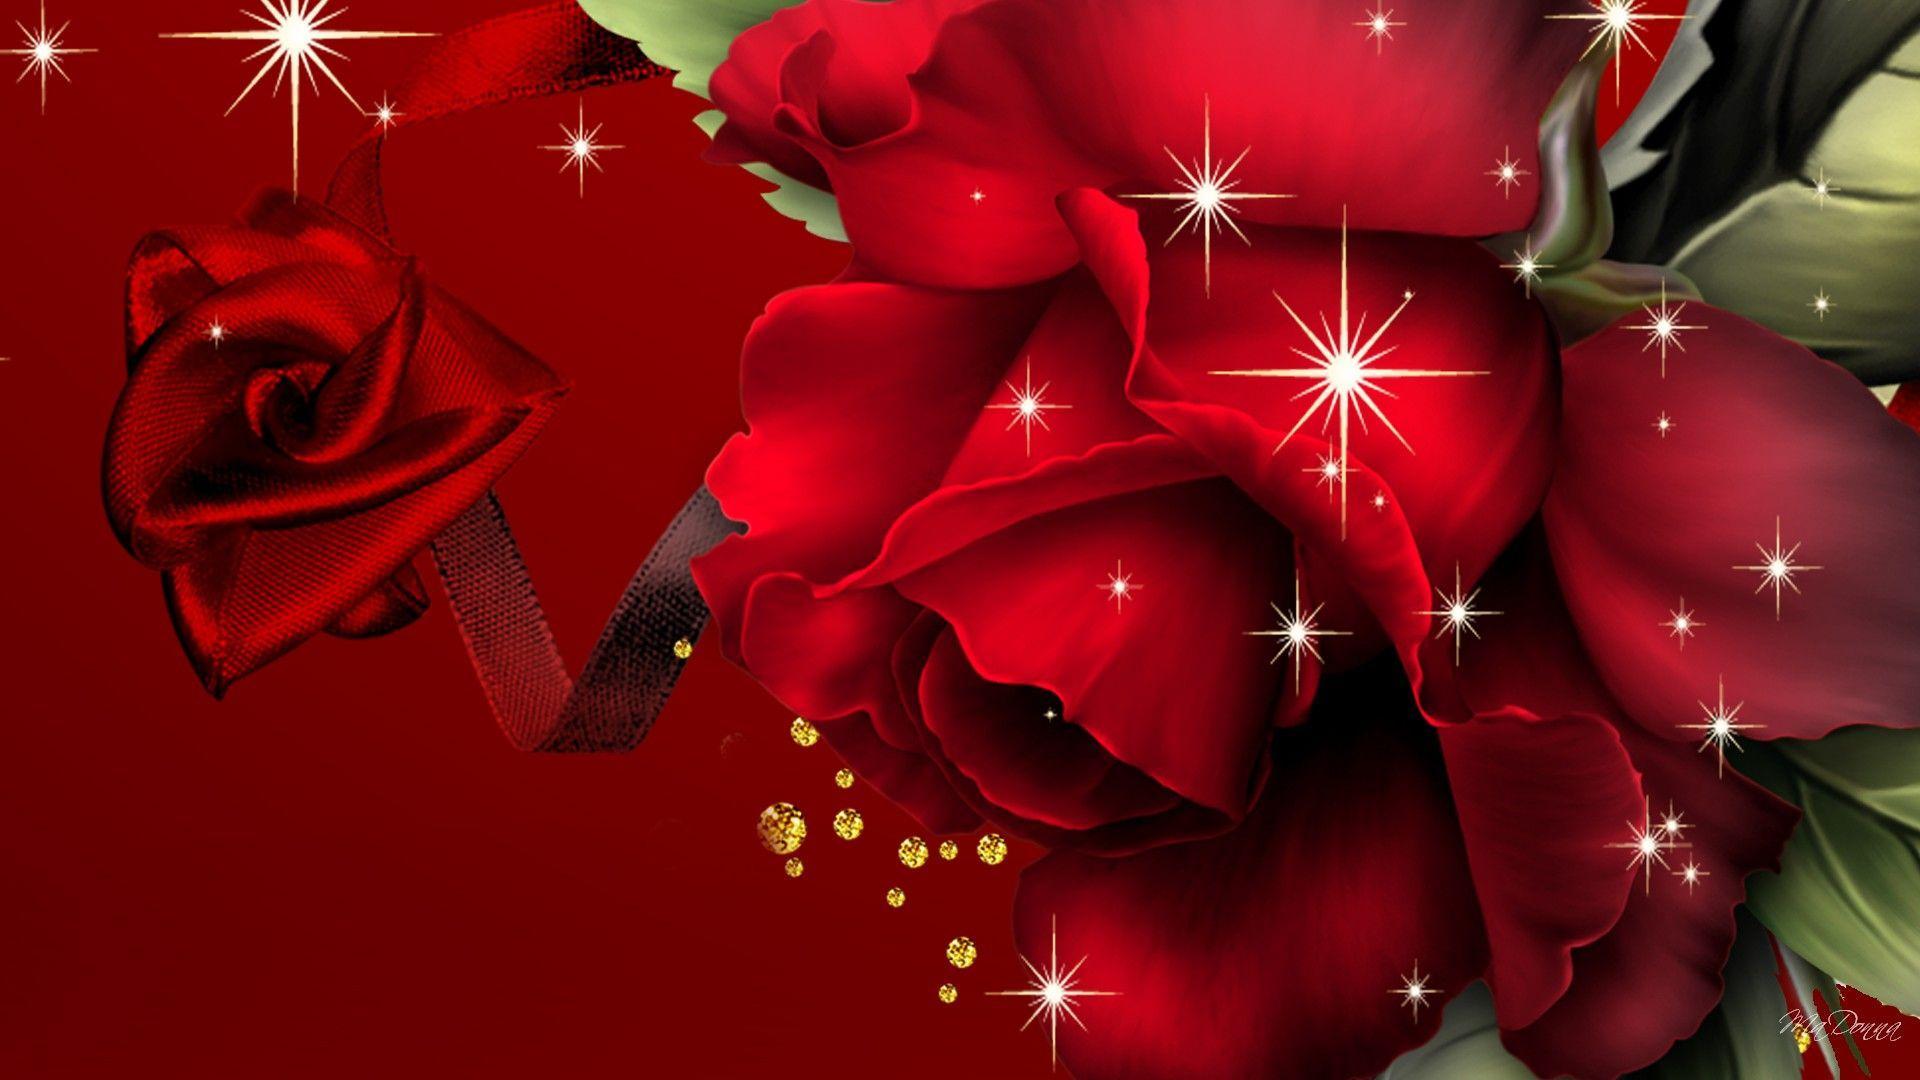 Red Roses Beautiful HD Free Wallpaper For Desktop